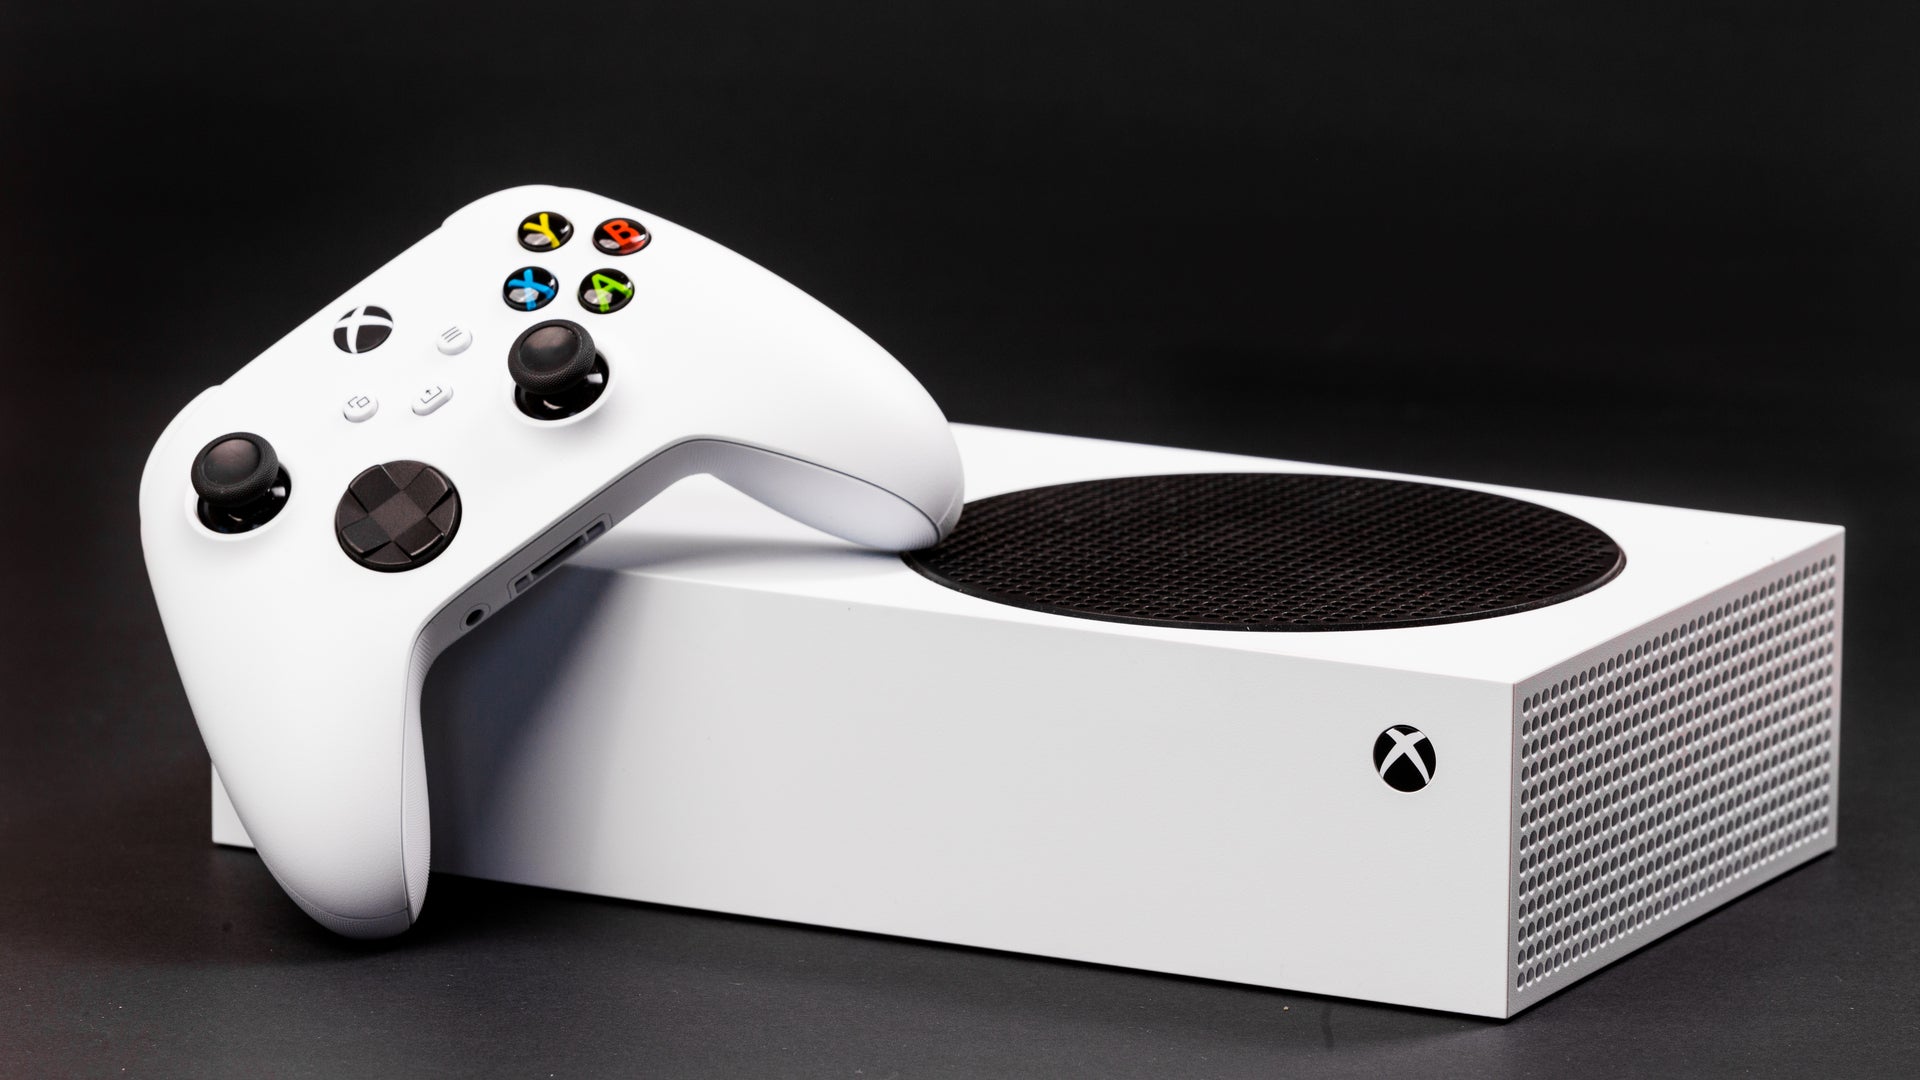 Bạn đang tìm kiếm một giao dịch tốt cho Xbox Series S? Đến đúng nơi rồi! Xbox Series S bundle deal đang chờ đón bạn với giá tốt nhất trên thị trường, bao gồm tất cả những thứ bạn cần để trải nghiệm game tuyệt vời, hãy xem ảnh liên quan và đừng bỏ lỡ cơ hội hiếm có này!